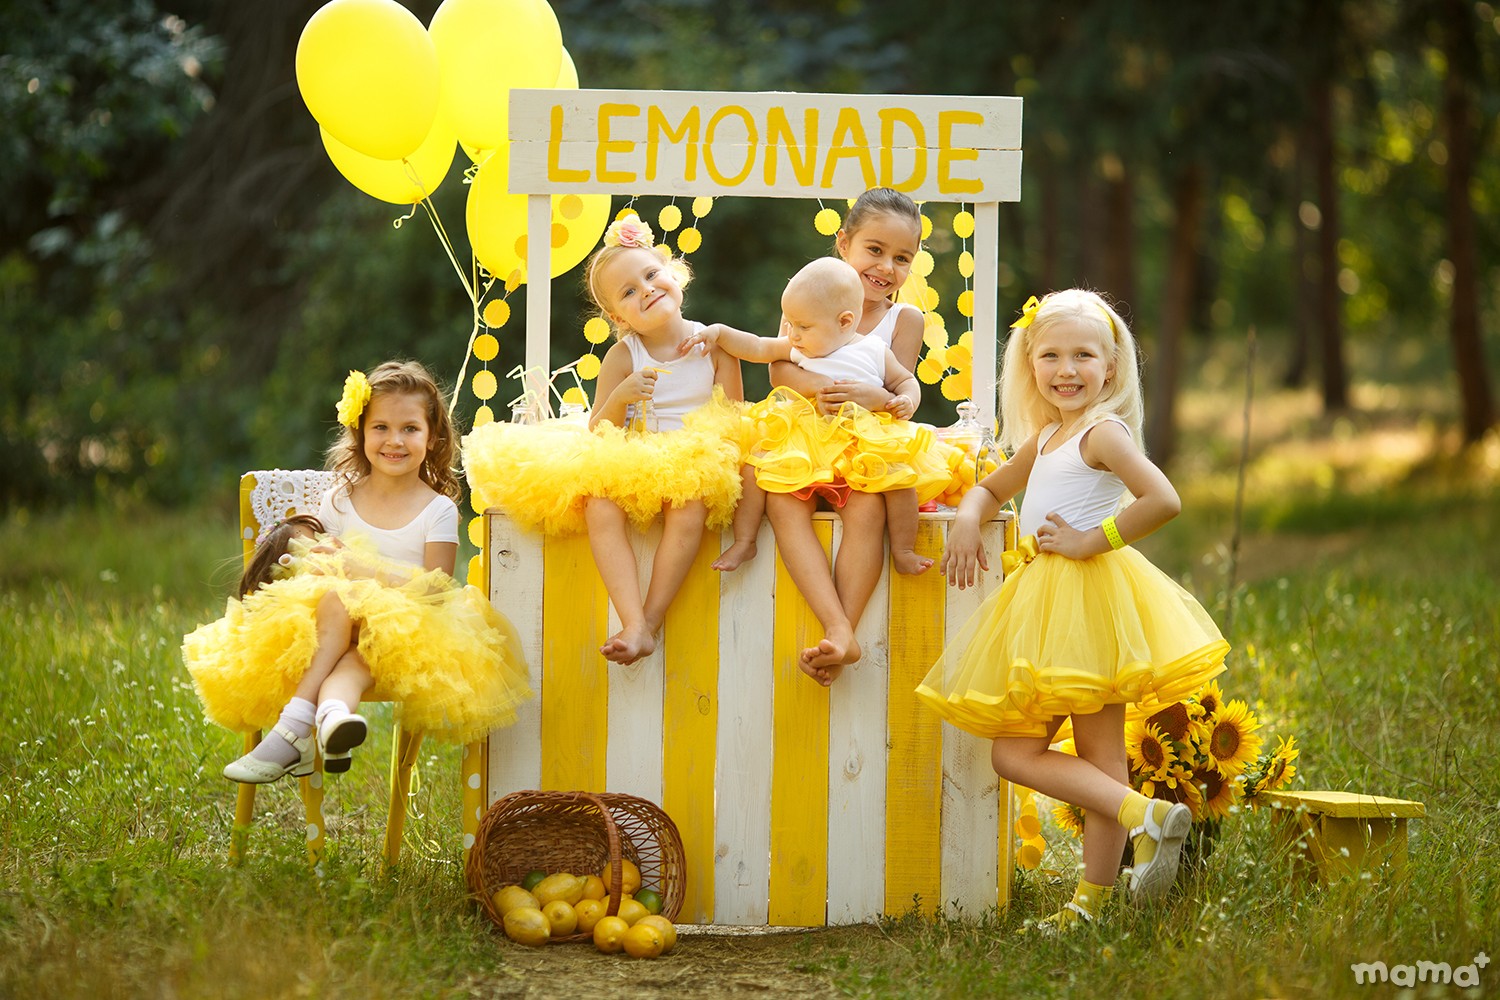 Proiect foto: "O limonadă răcoritoare" de Aliona Nikanorova